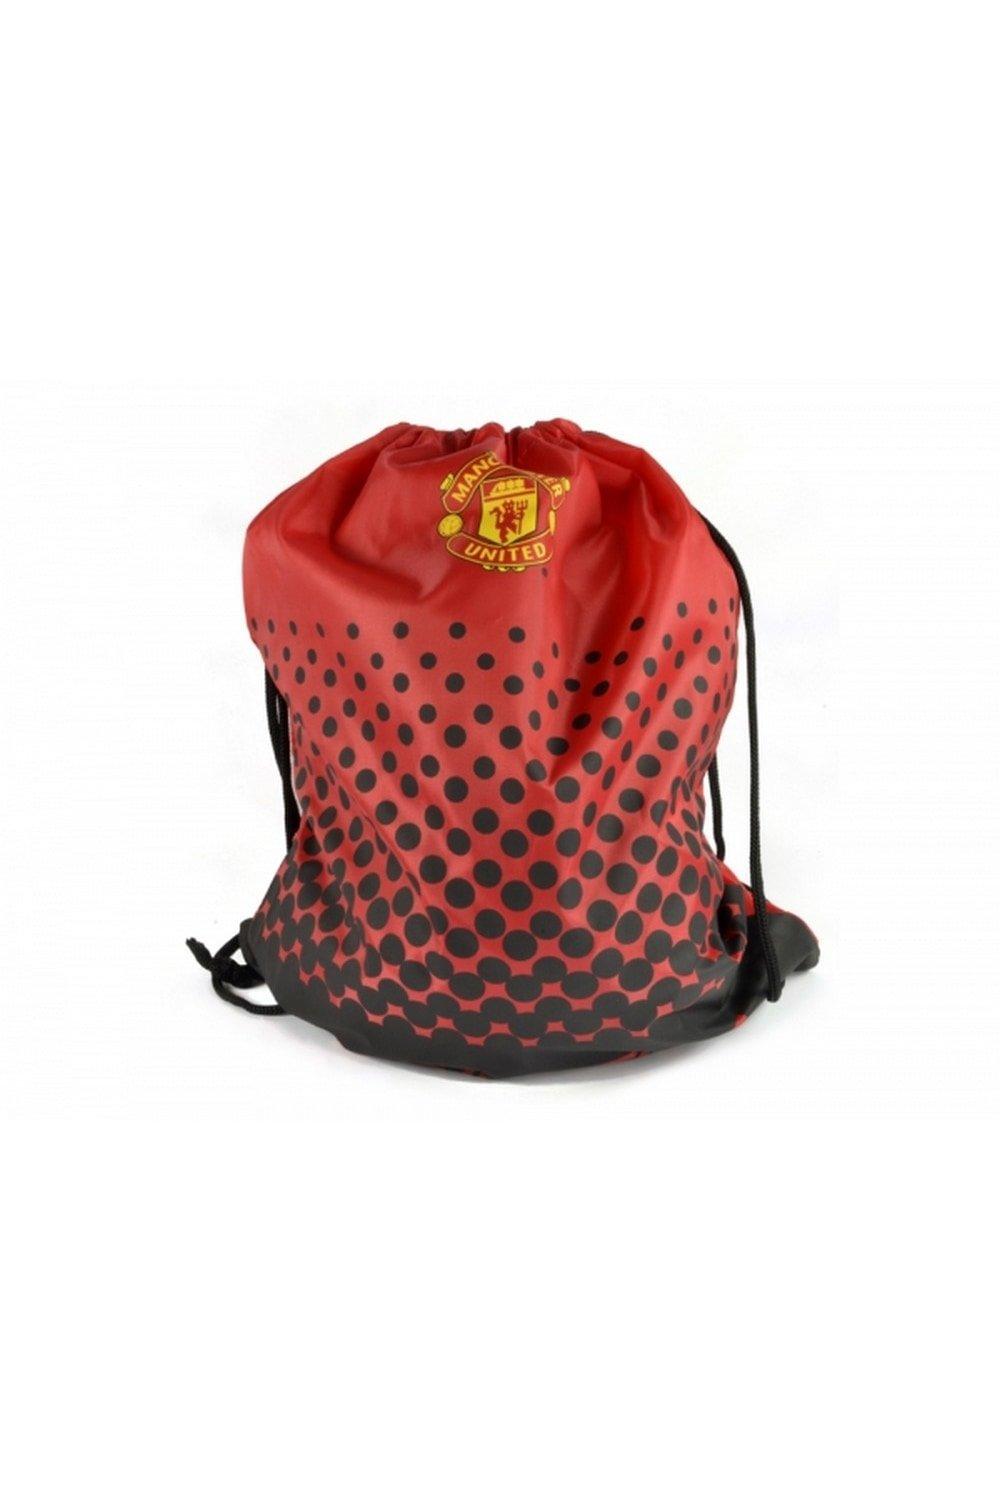 Спортивная сумка Манчестер Юнайтед Manchester United FC, красный спортивная сумка манчестер юнайтед manchester united fc красный